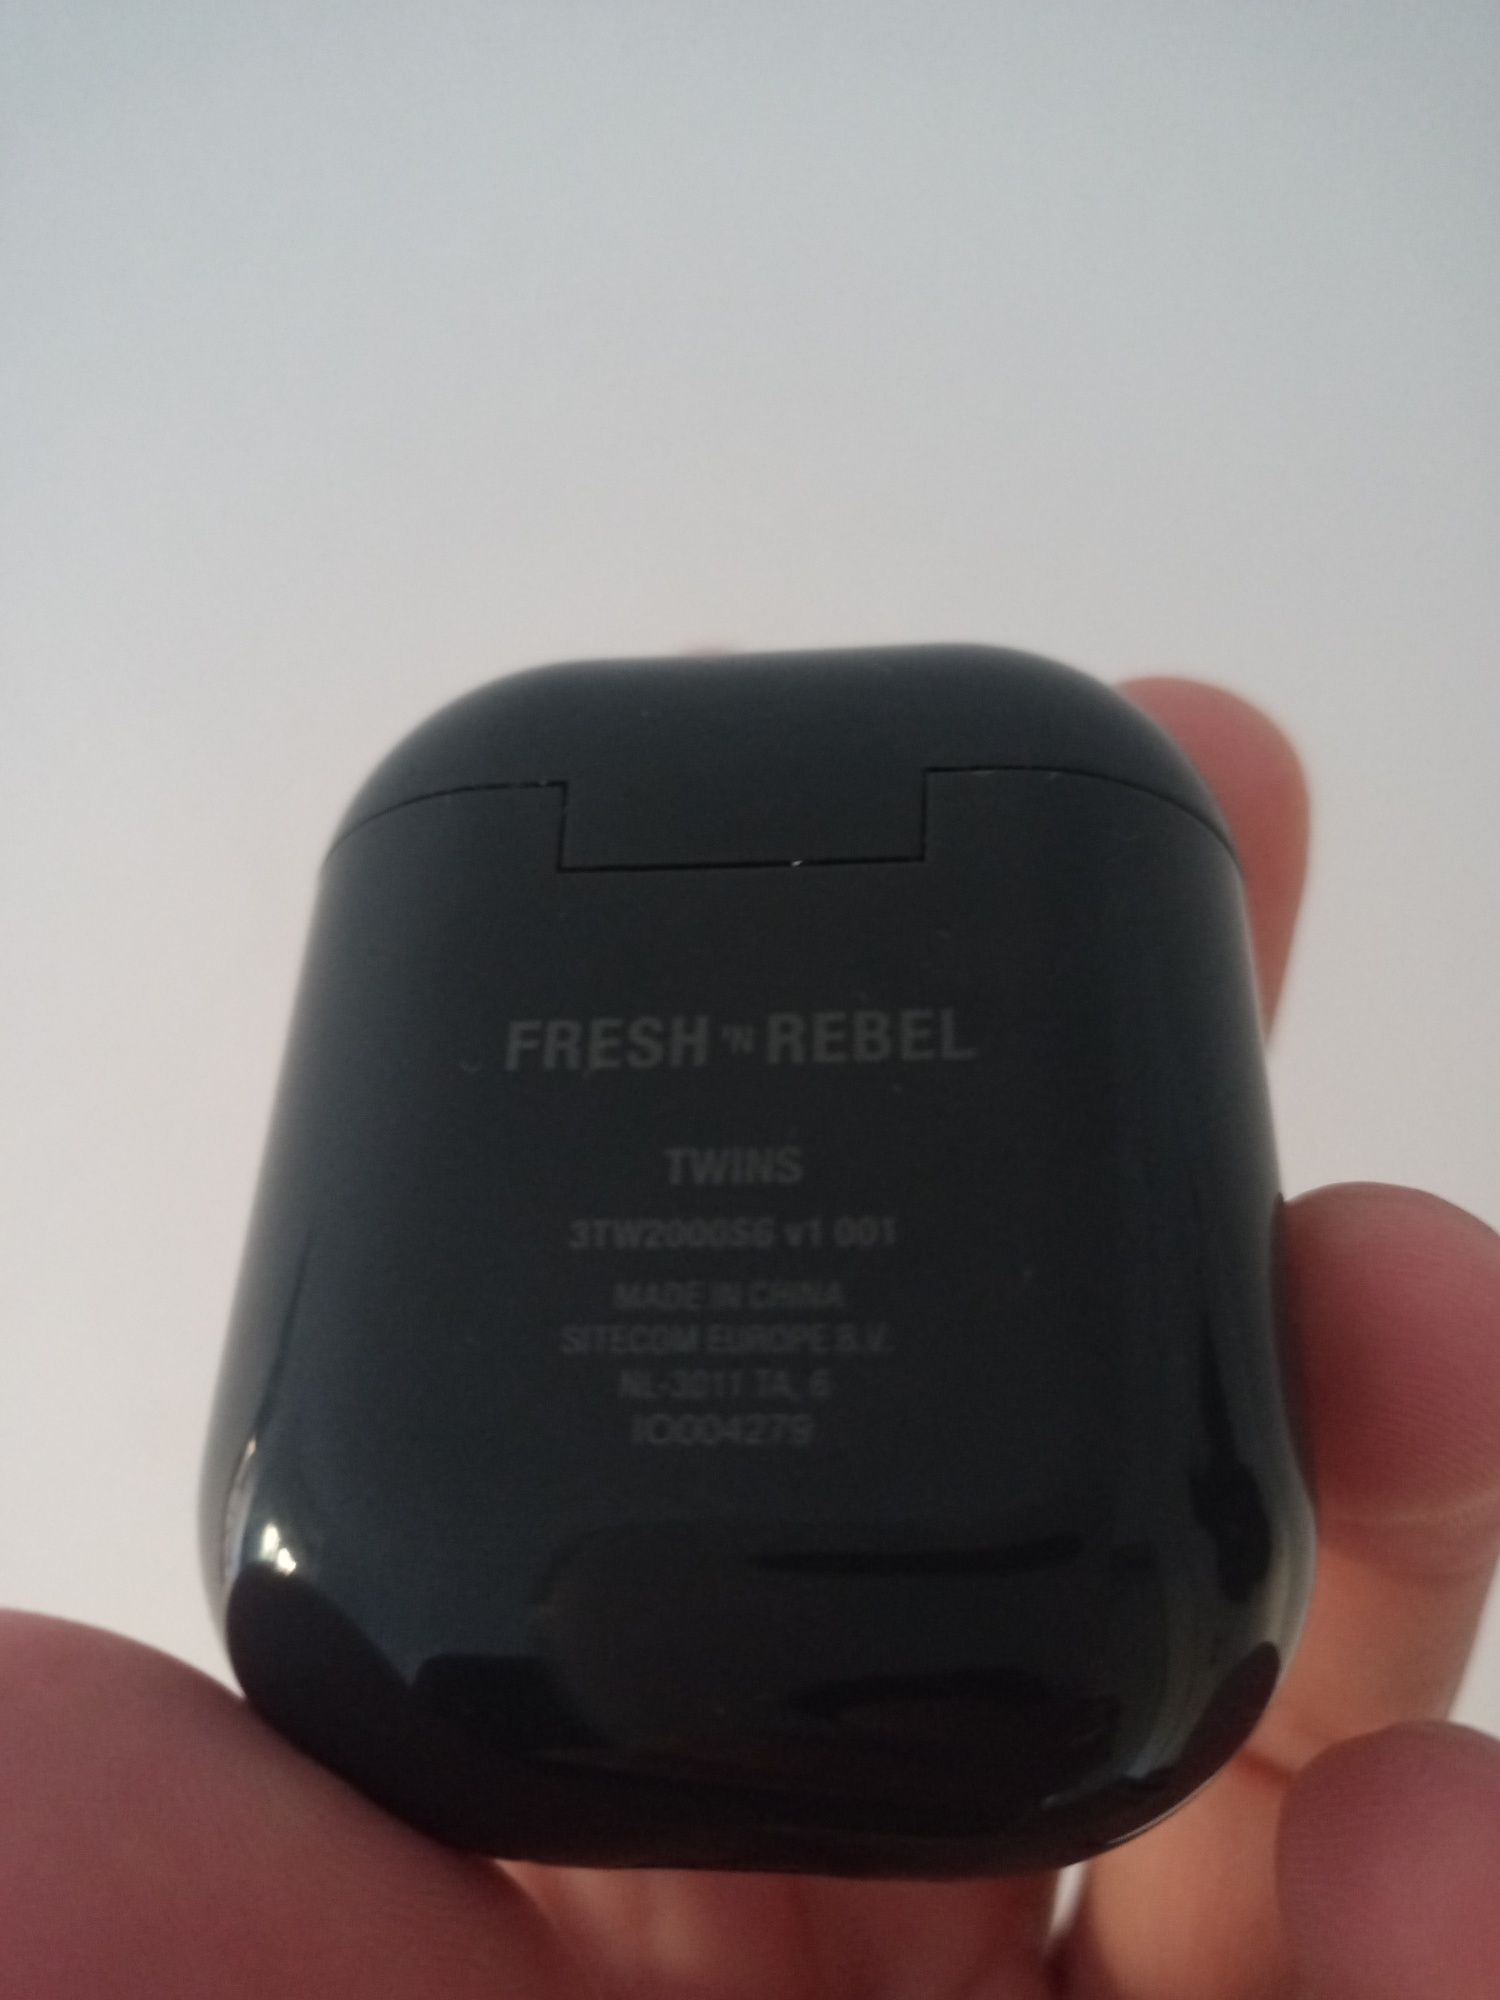 Fresh n rebel auriculares